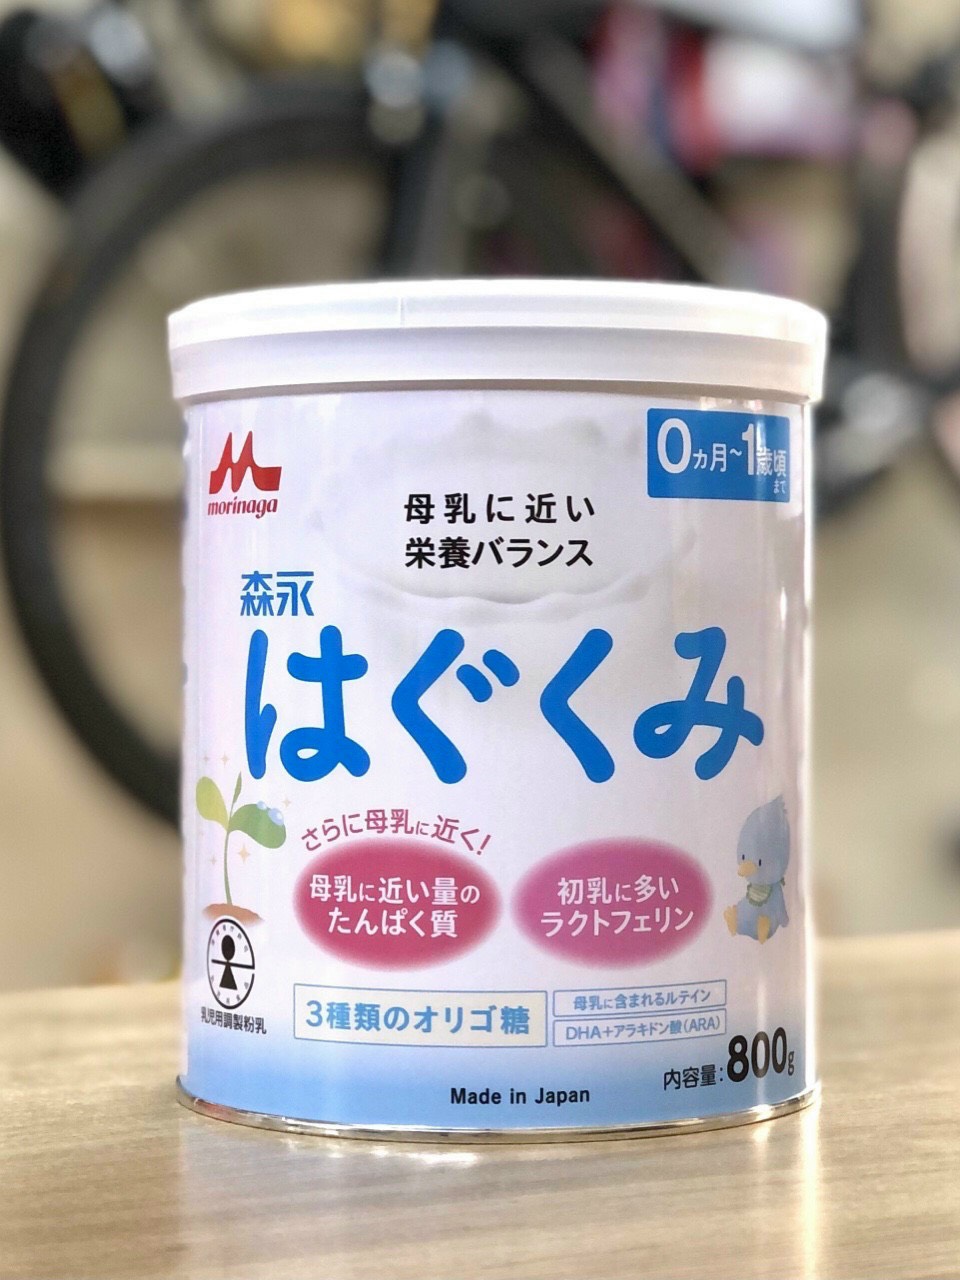 Sữa morigana số 0 Nội địa Nhật